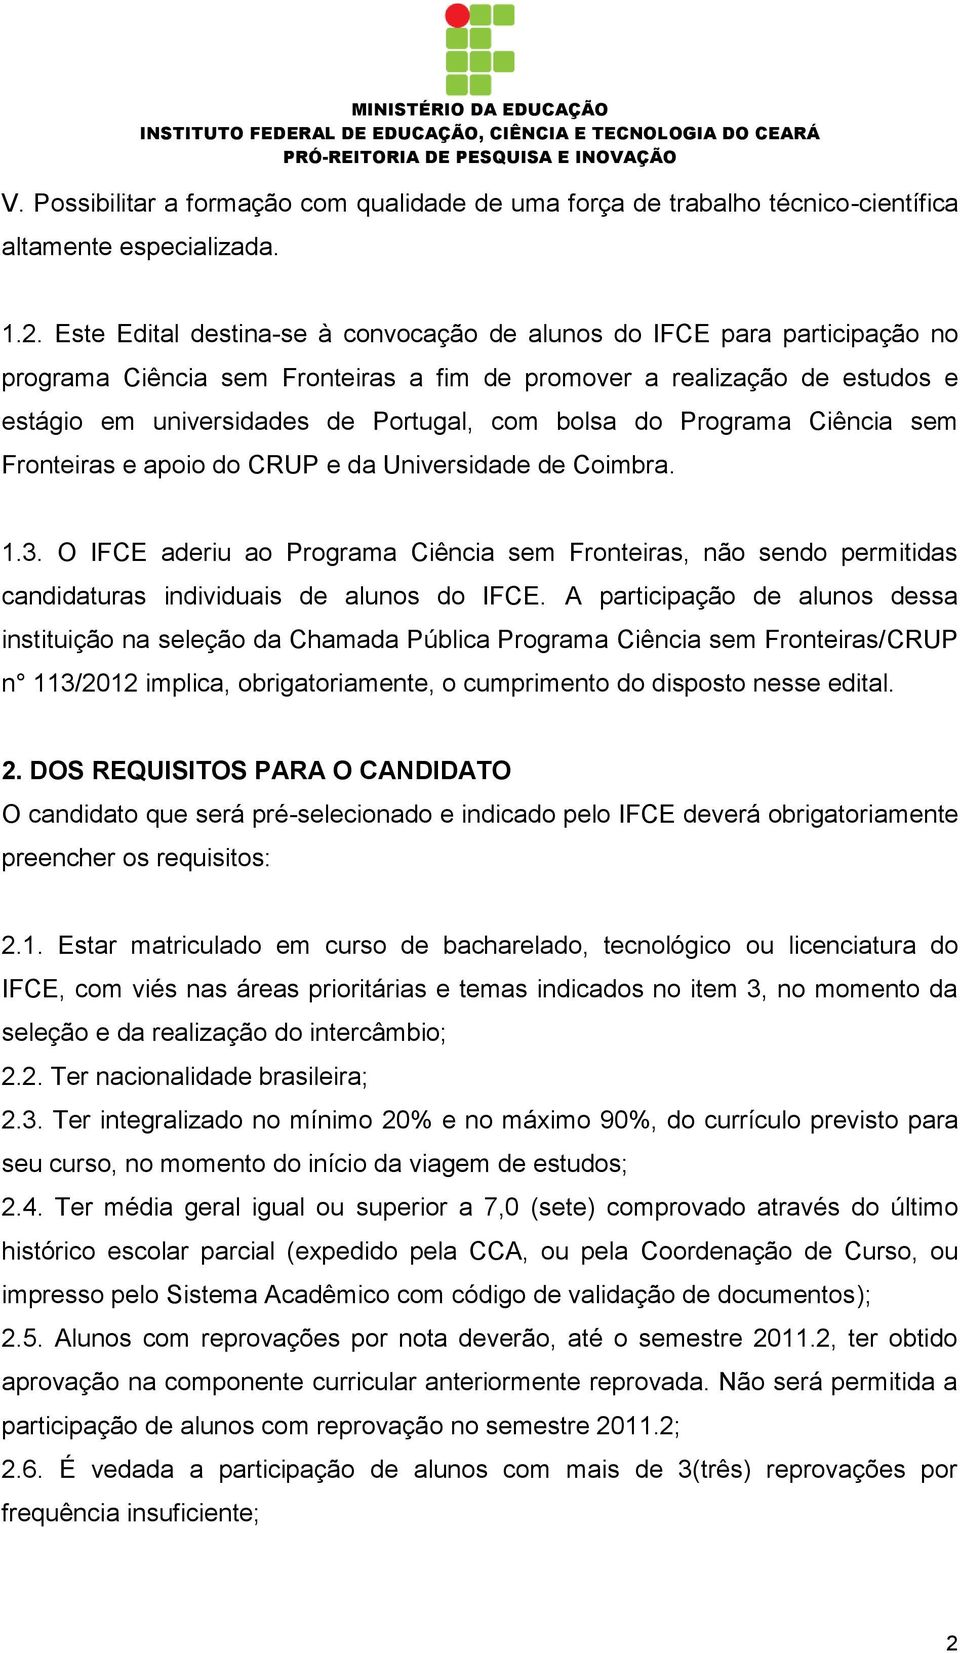 do Programa Ciência sem Fronteiras e apoio do CRUP e da Universidade de Coimbra. 1.3. O IFCE aderiu ao Programa Ciência sem Fronteiras, não sendo permitidas candidaturas individuais de alunos do IFCE.